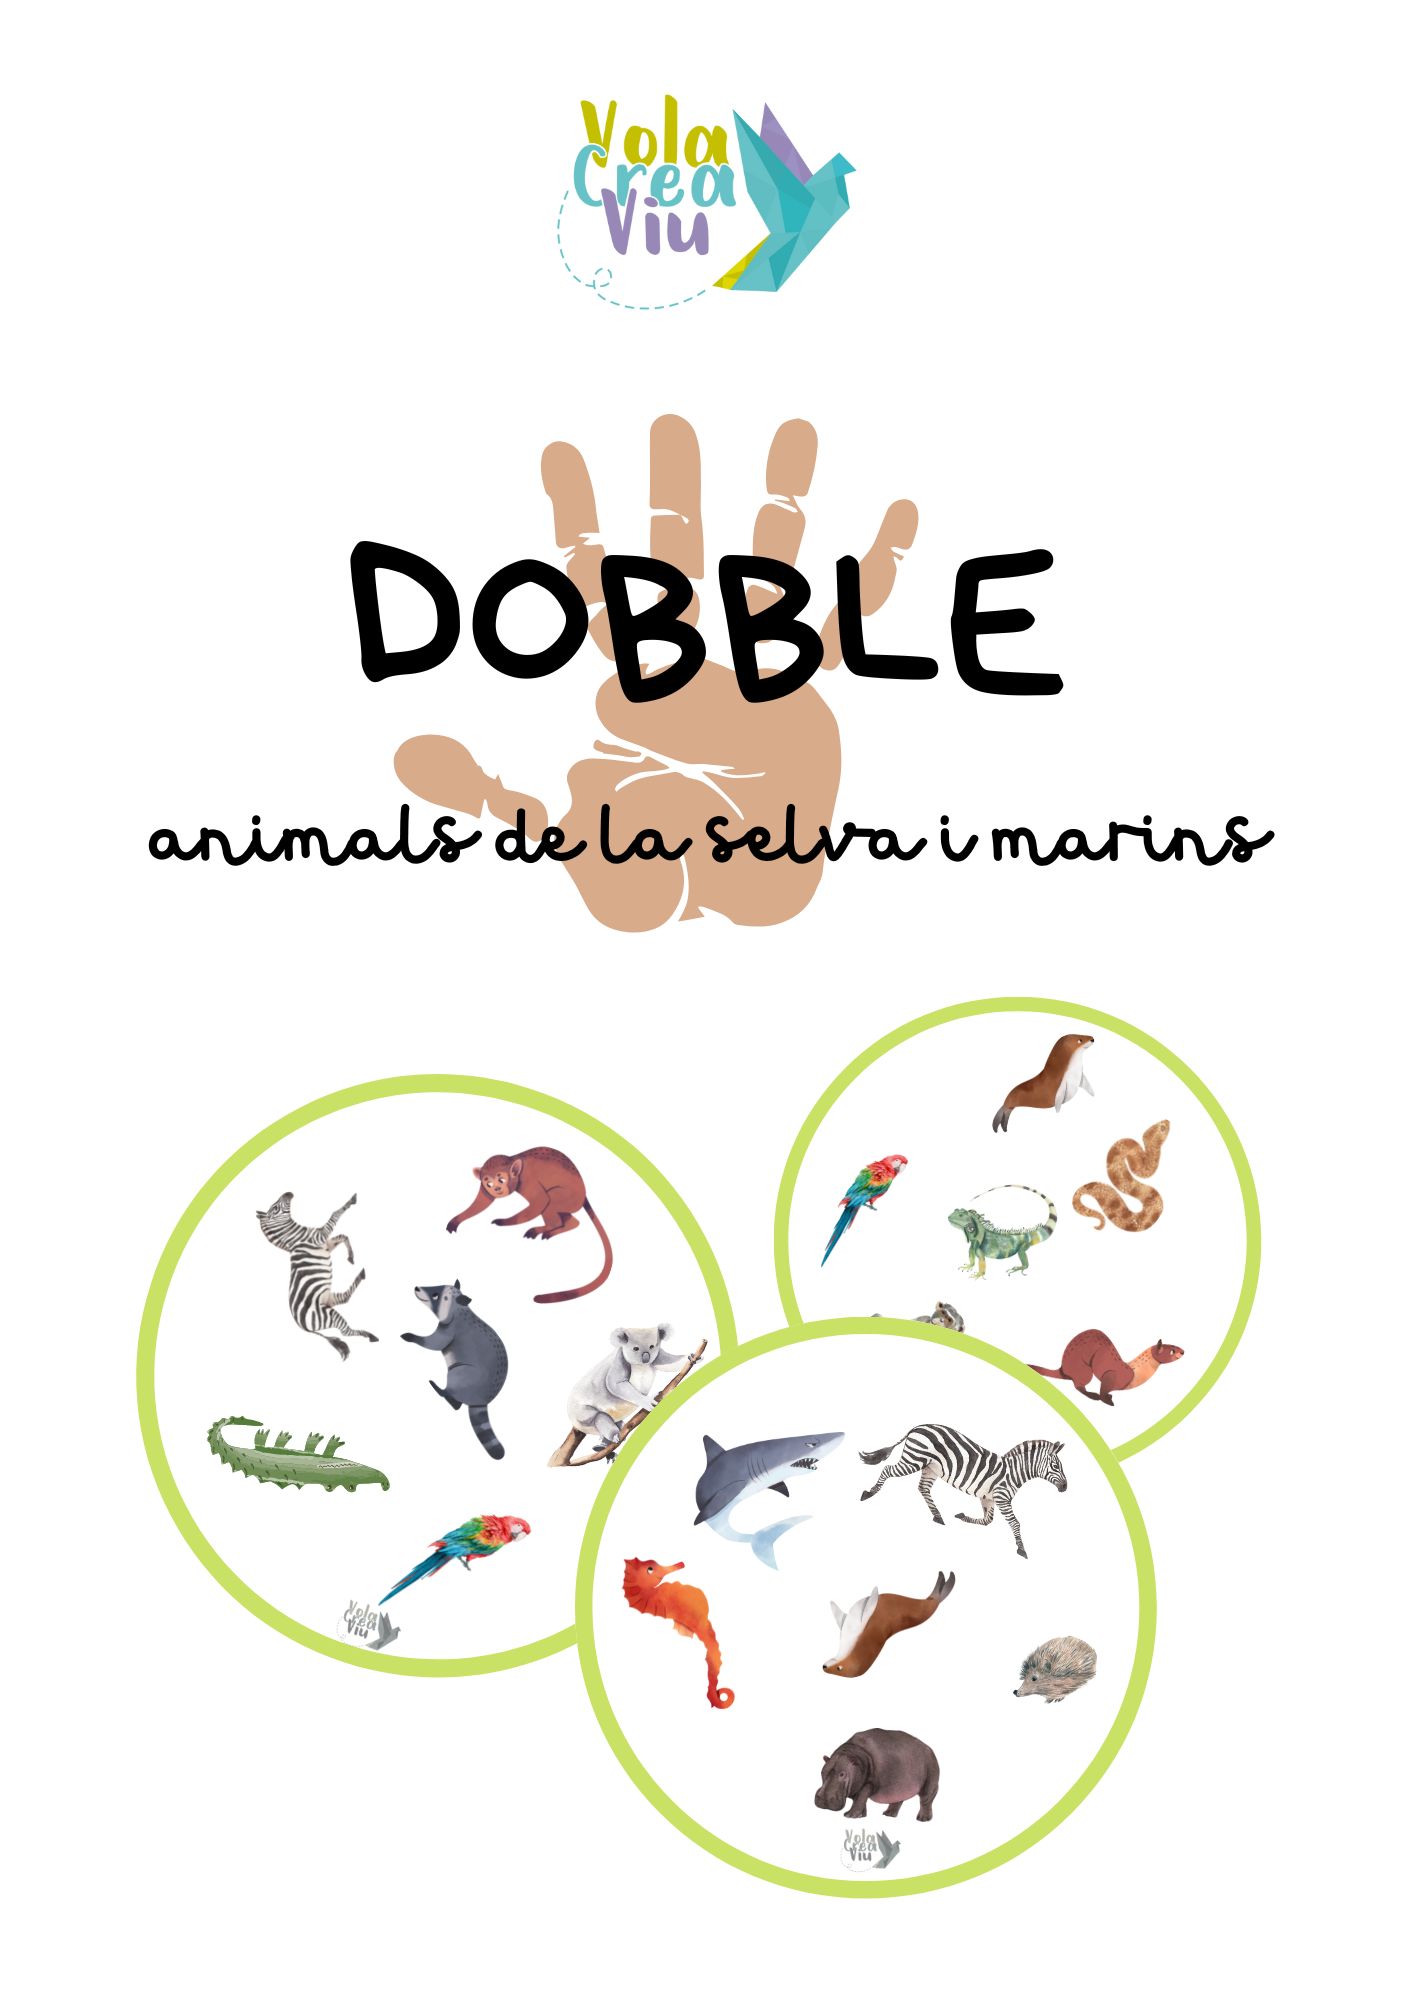 Dobble animals de la selva i animals marins